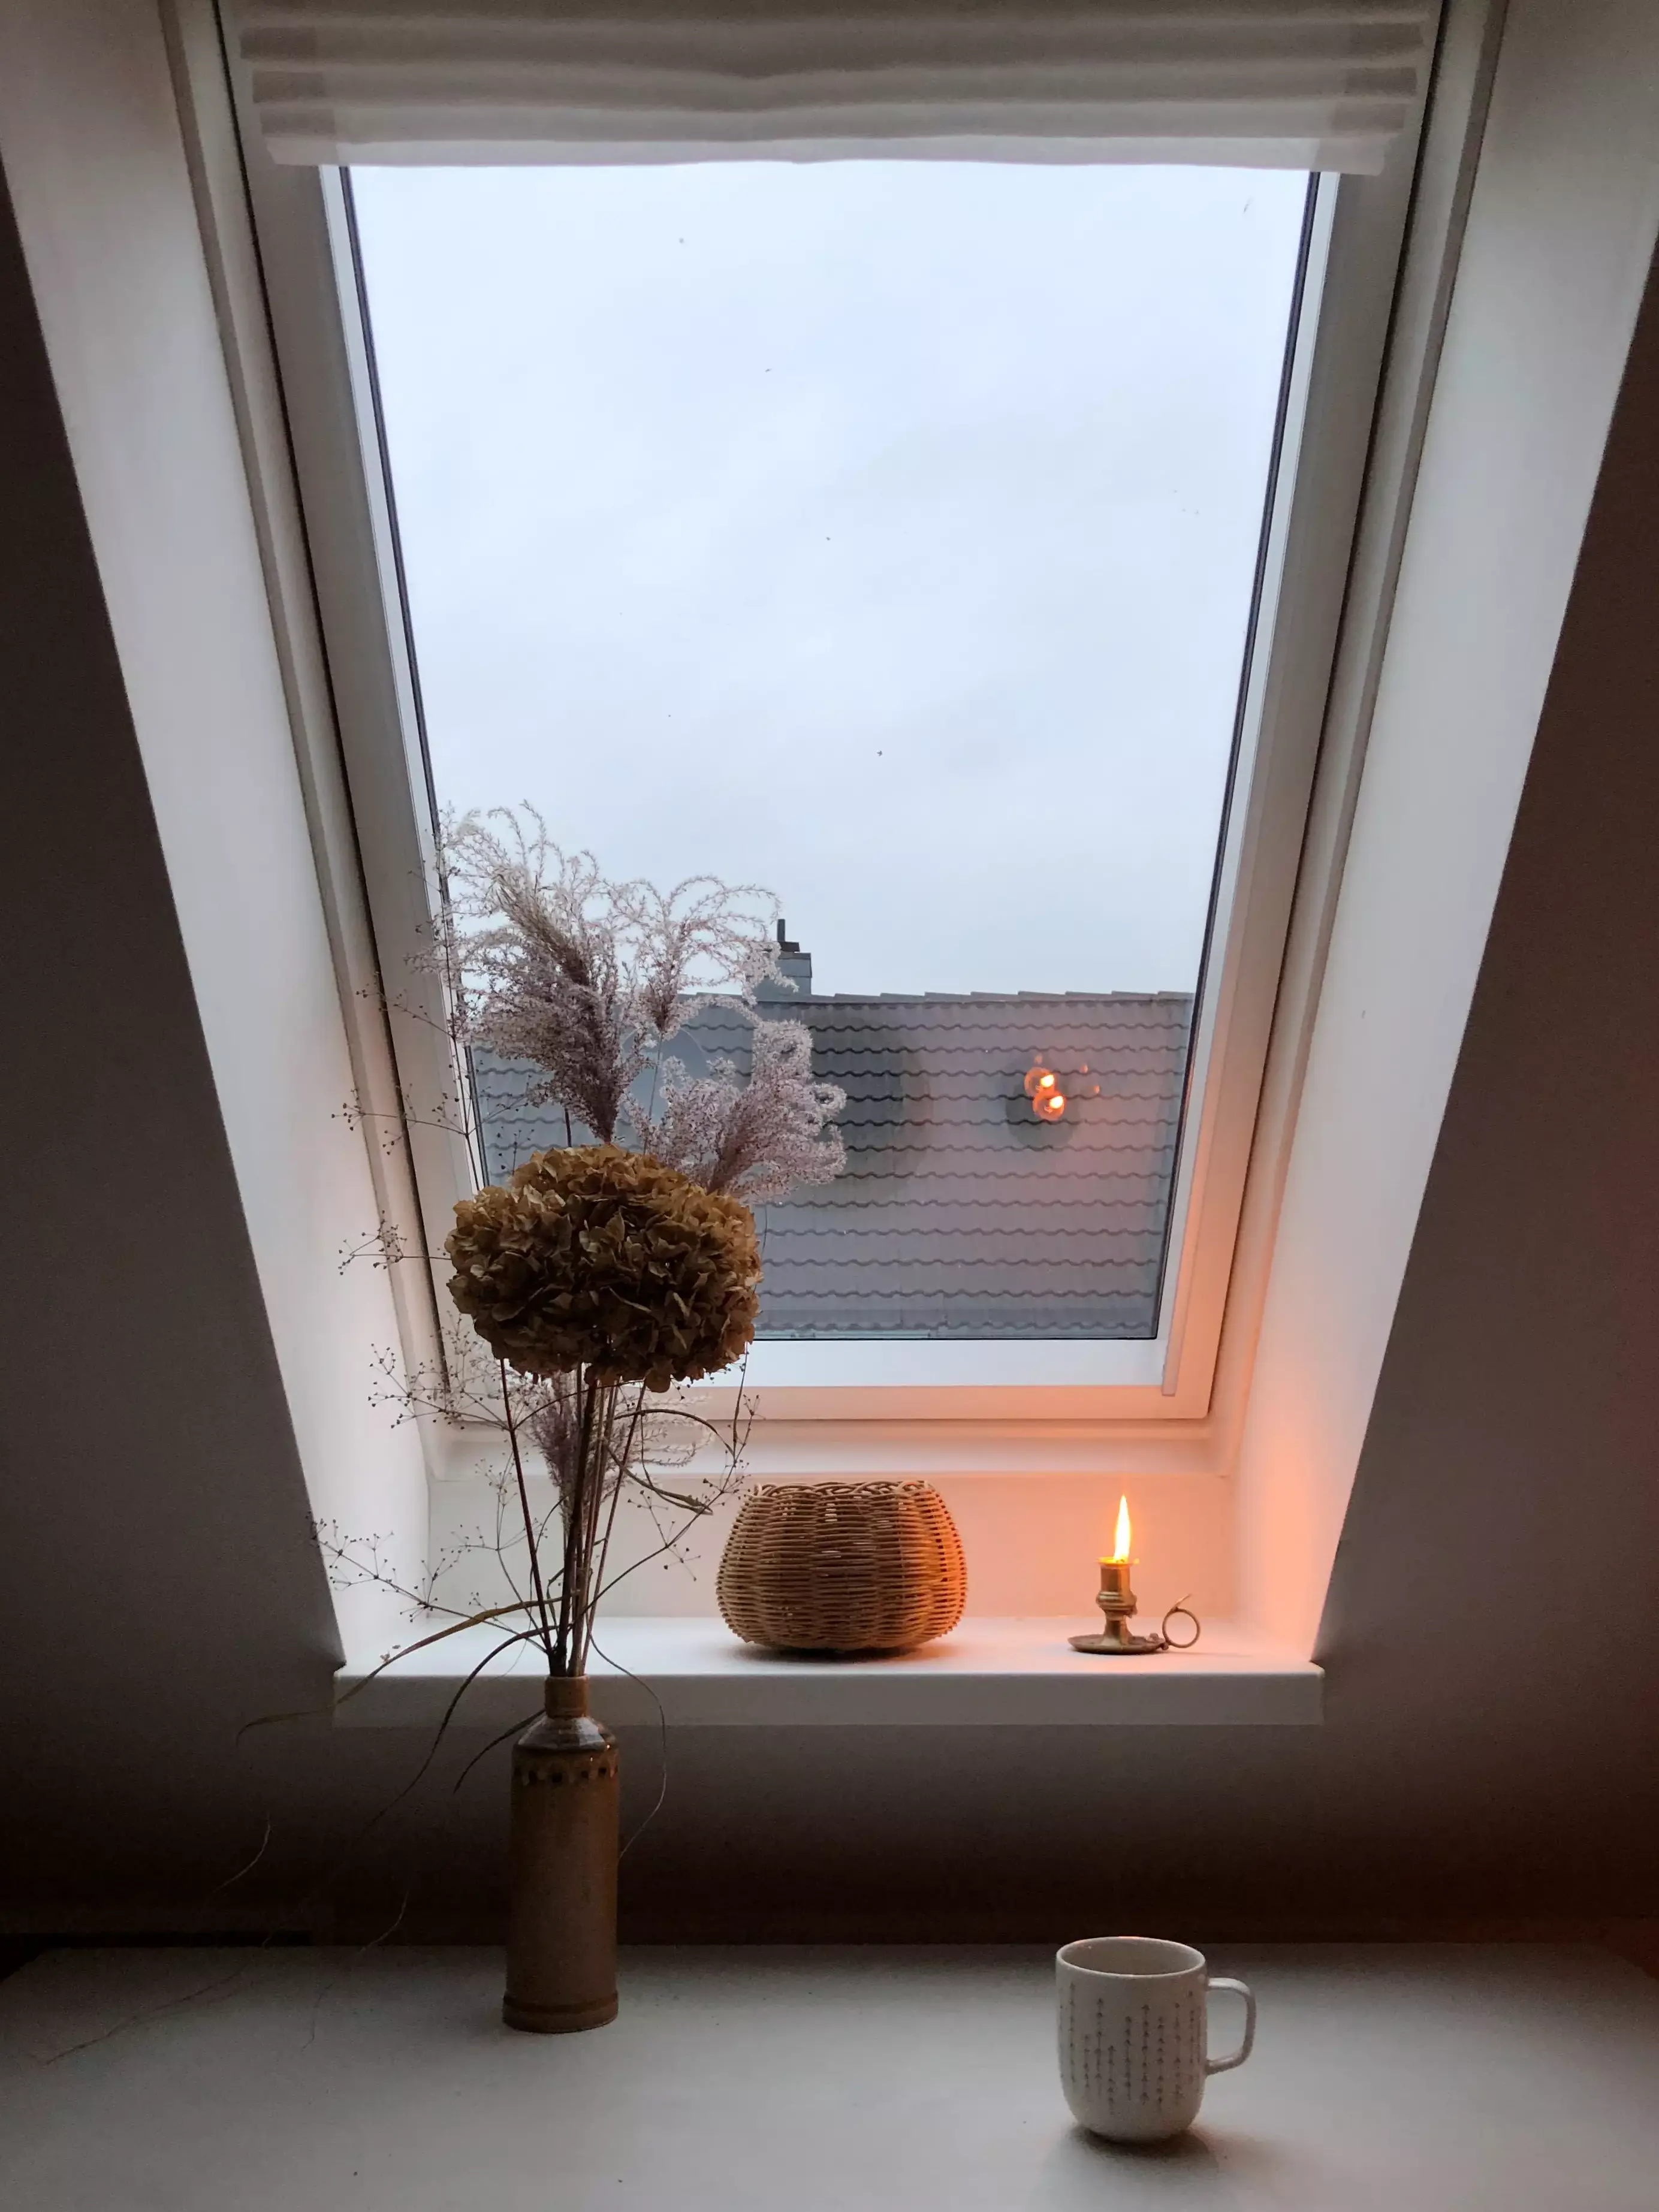 Fenêtre de toit VELUX éclairant un coin douillet avec des fleurs séchées, un panier et une bougie.